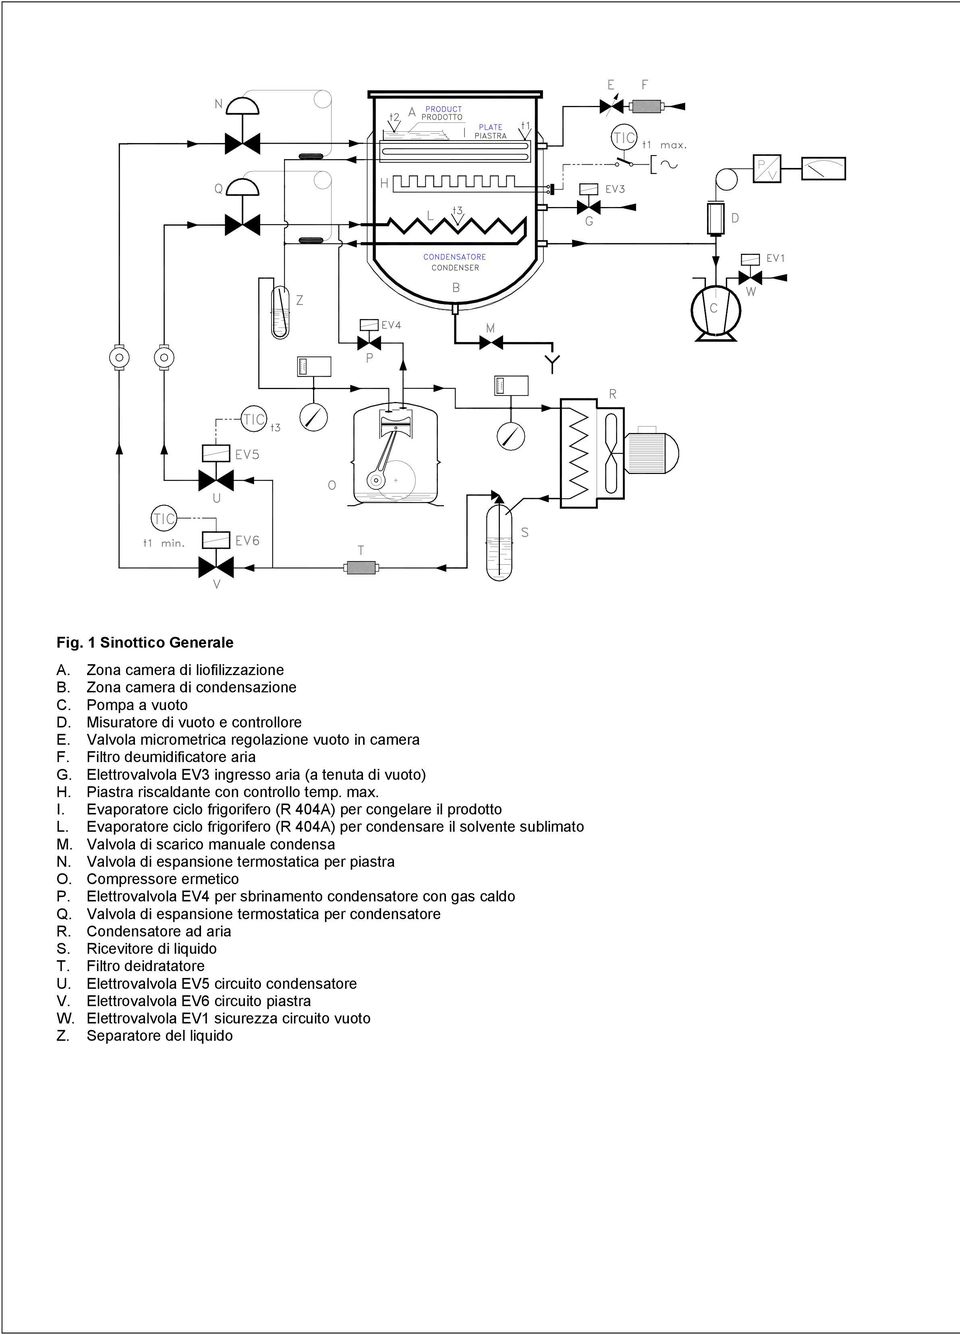 Evaporatore ciclo frigorifero (R 404A) per congelare il prodotto L. Evaporatore ciclo frigorifero (R 404A) per condensare il solvente sublimato M. Valvola di scarico manuale condensa N.